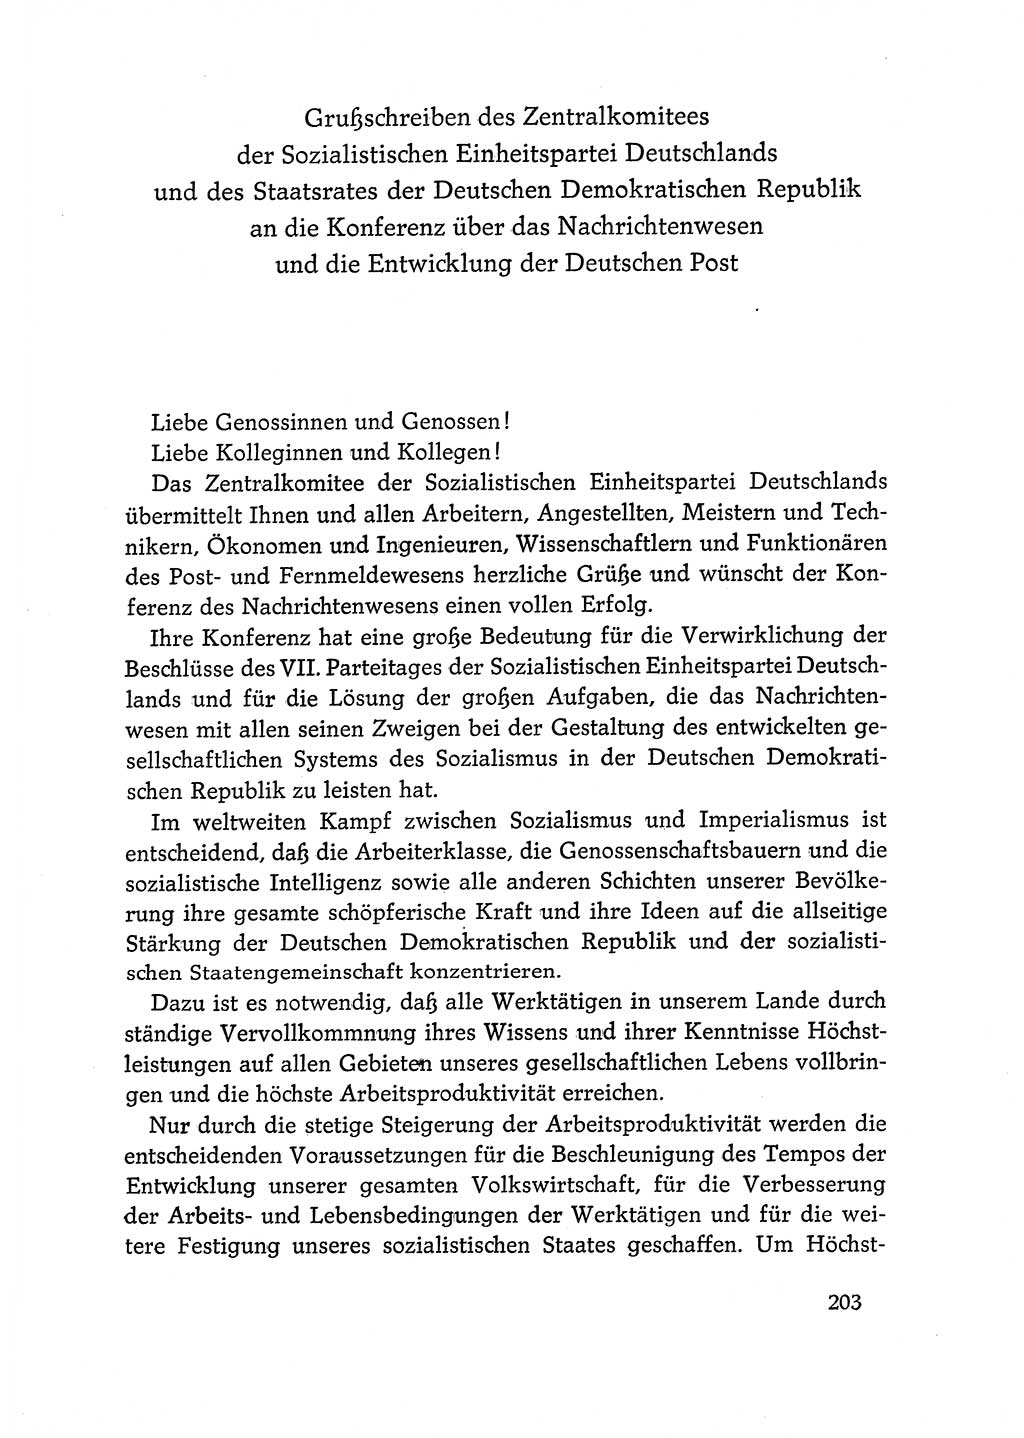 Dokumente der Sozialistischen Einheitspartei Deutschlands (SED) [Deutsche Demokratische Republik (DDR)] 1968-1969, Seite 203 (Dok. SED DDR 1968-1969, S. 203)